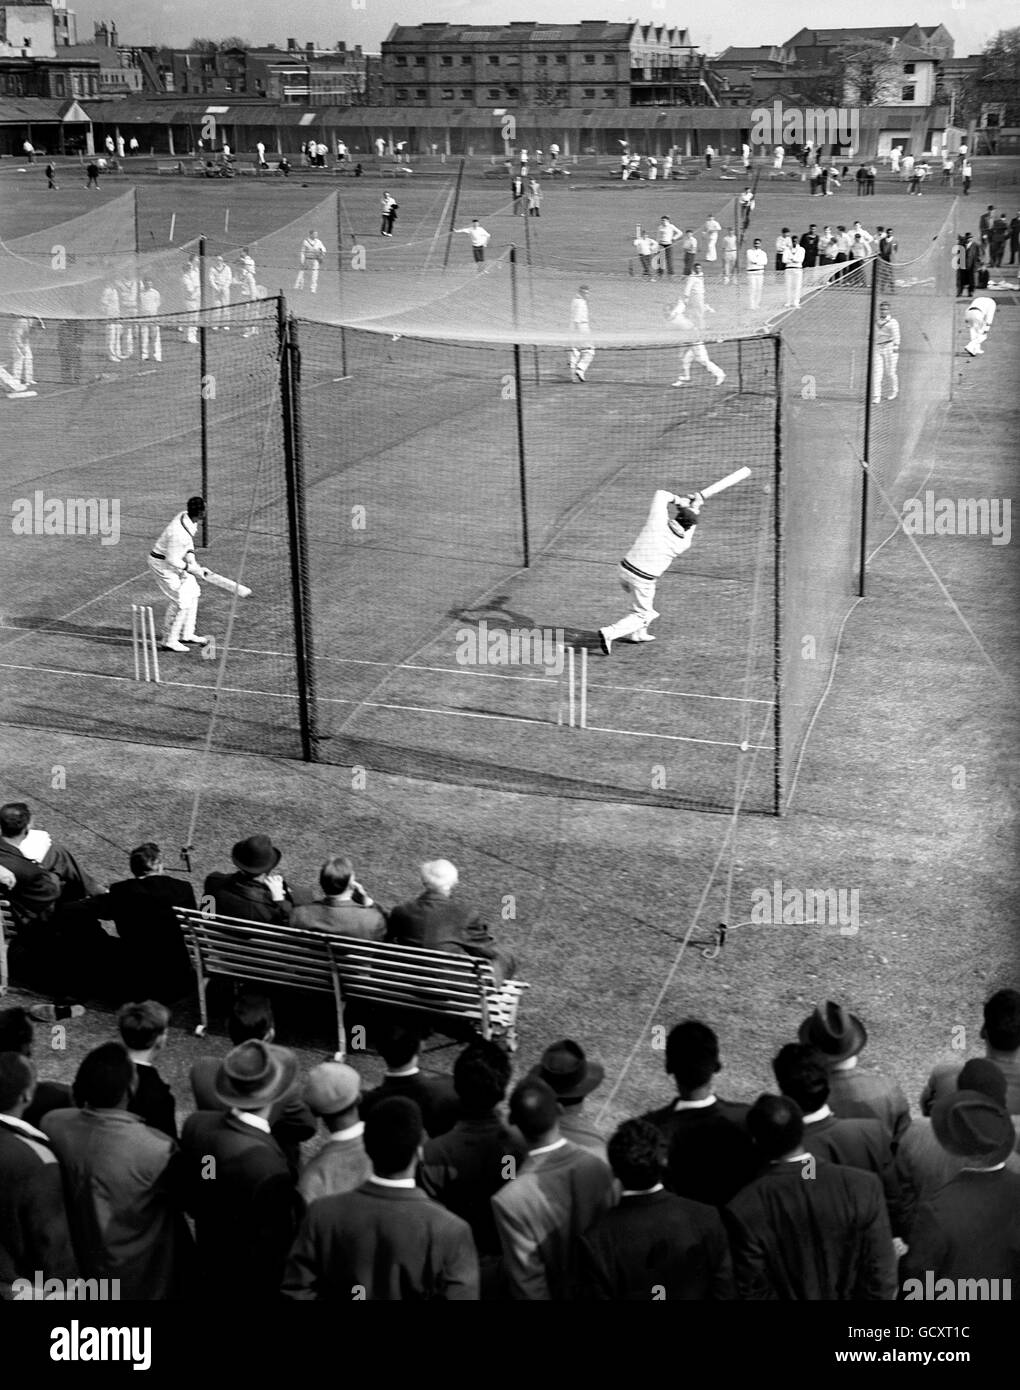 Eine allgemeine Ansicht, die Everton Weekes und Andy Ganteaume zeigt, wie sie an den Netzen üben. Stockfoto